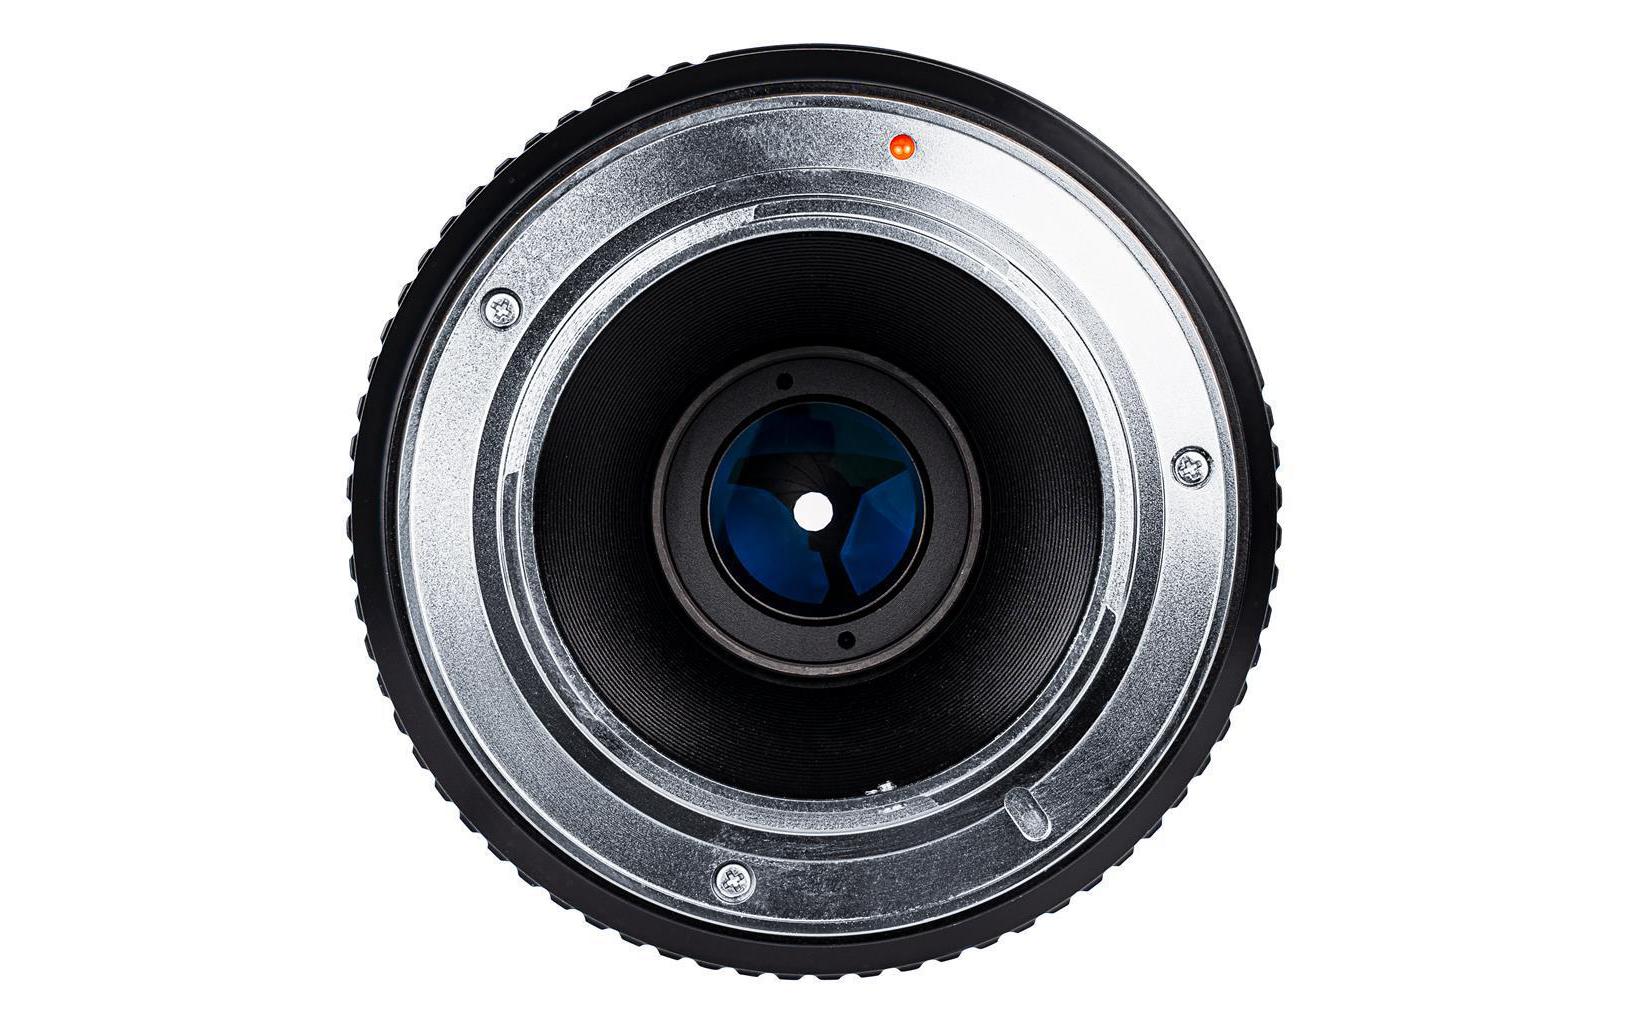 Dörr Festbrennweite Makro 60mm F/2.8 – Fujifilm X-Mount